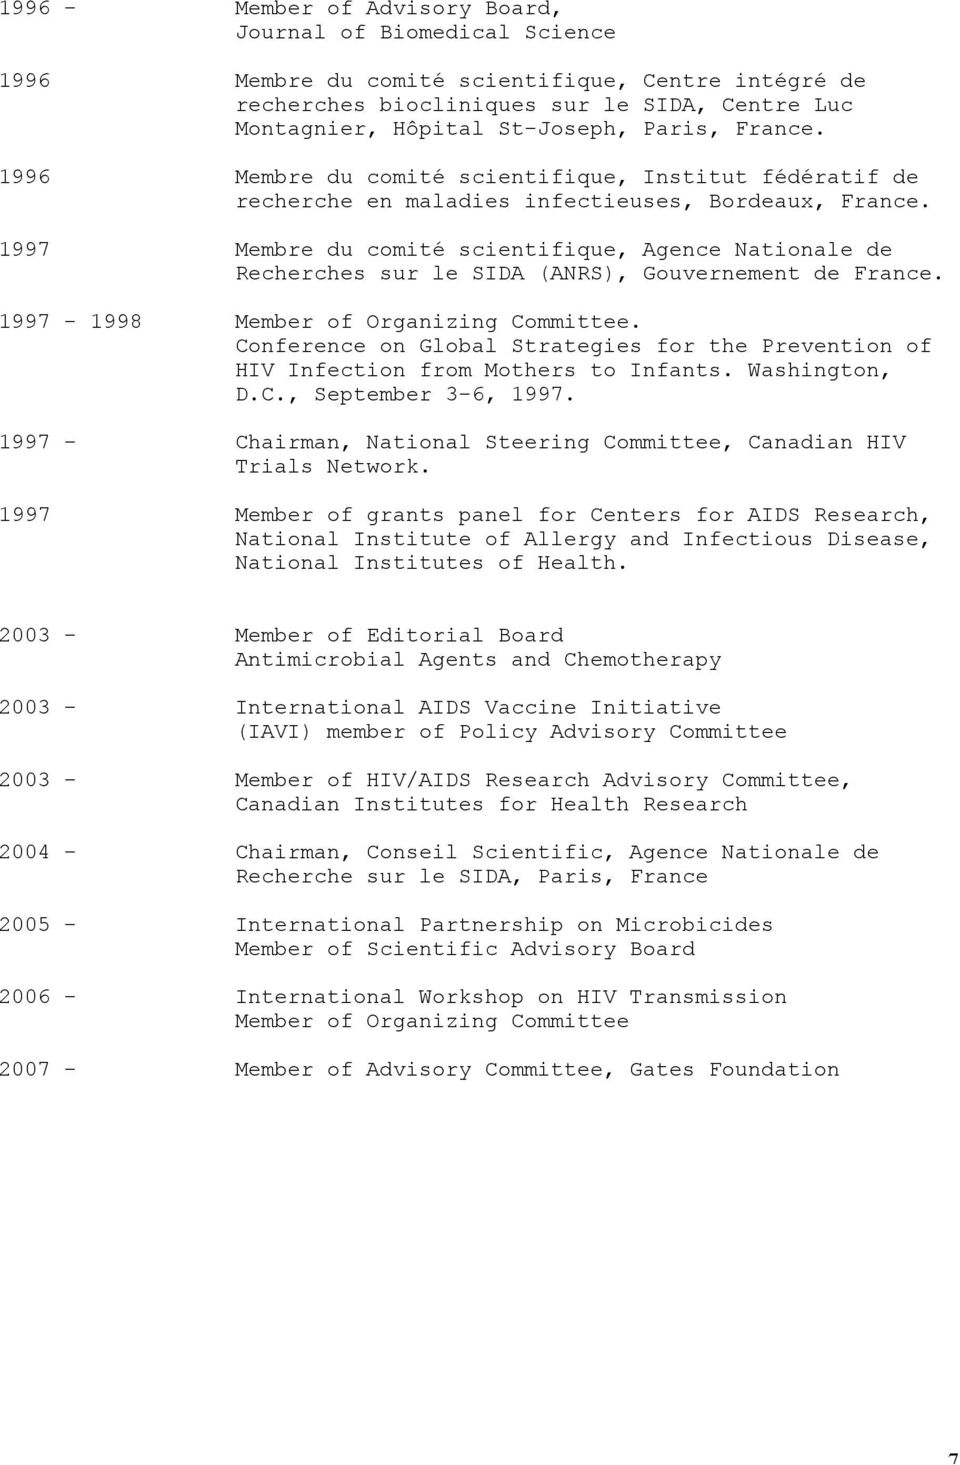 1997 Membre du comité scientifique, Agence Nationale de Recherches sur le SIDA (ANRS), Gouvernement de France. 1997-1998 Member of Organizing Committee.